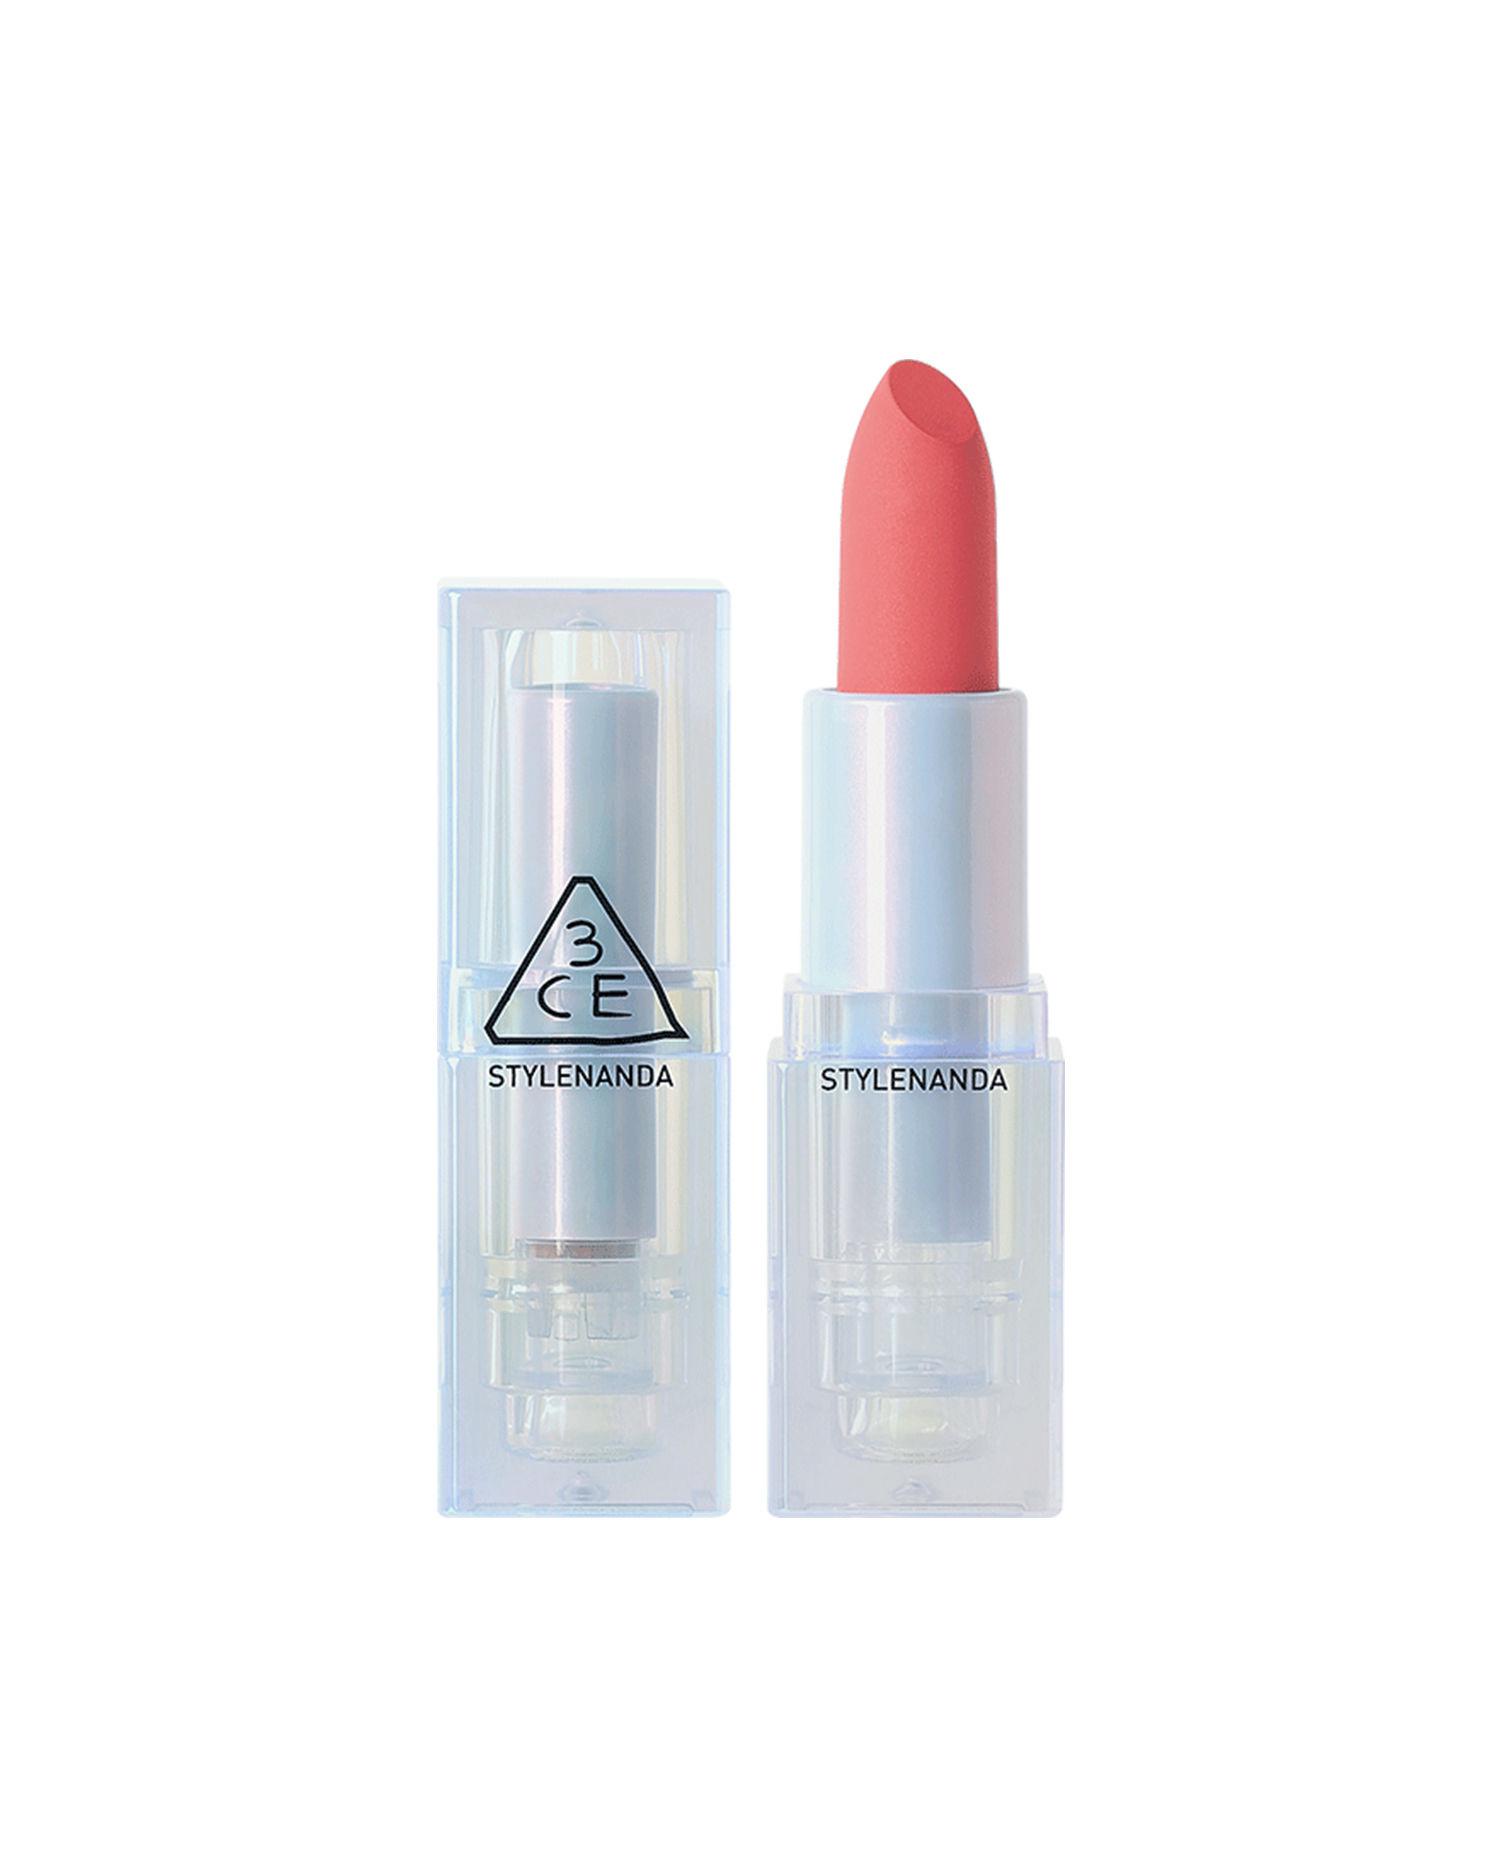 Soft matte lipstick #Breezy Pink by 3CE